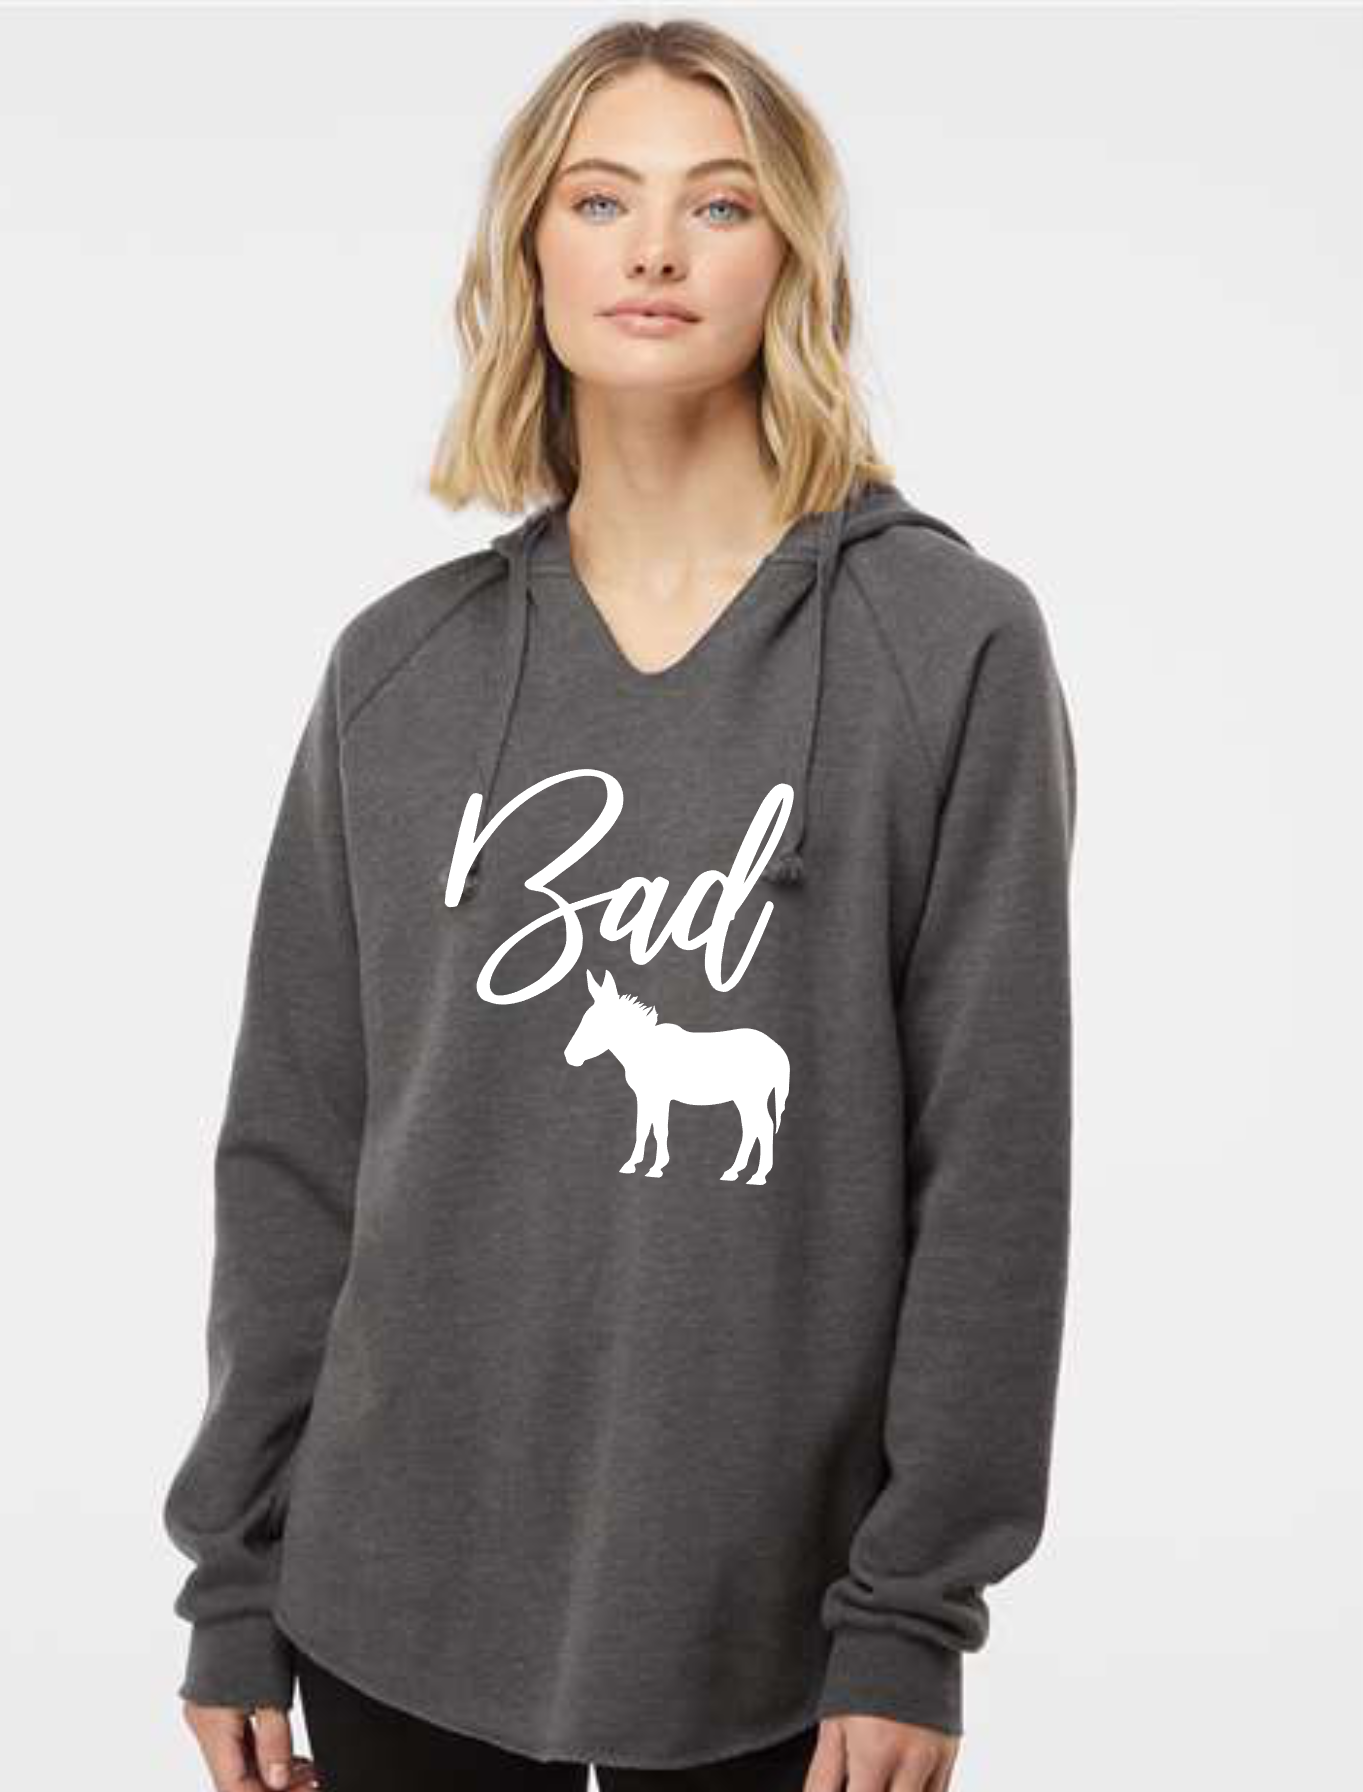 Bad Ass Lightweight California Wave Wash Hooded Sweatshirt